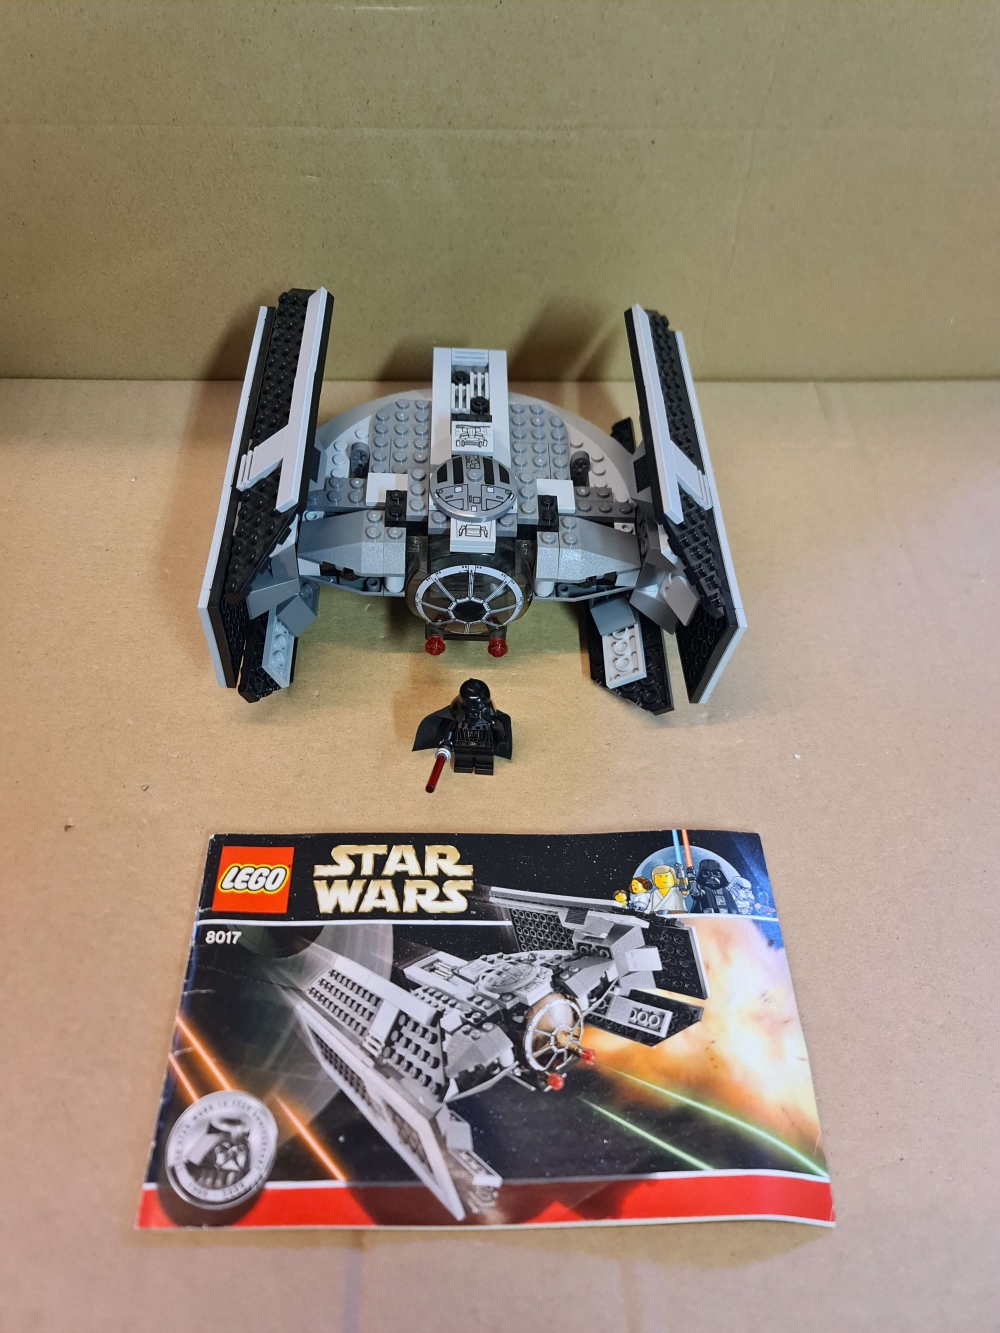 Sett 8017 fra Lego Star Wars: Episode 4/5/6 serien.

Meget pent.

Komplett med manual. 